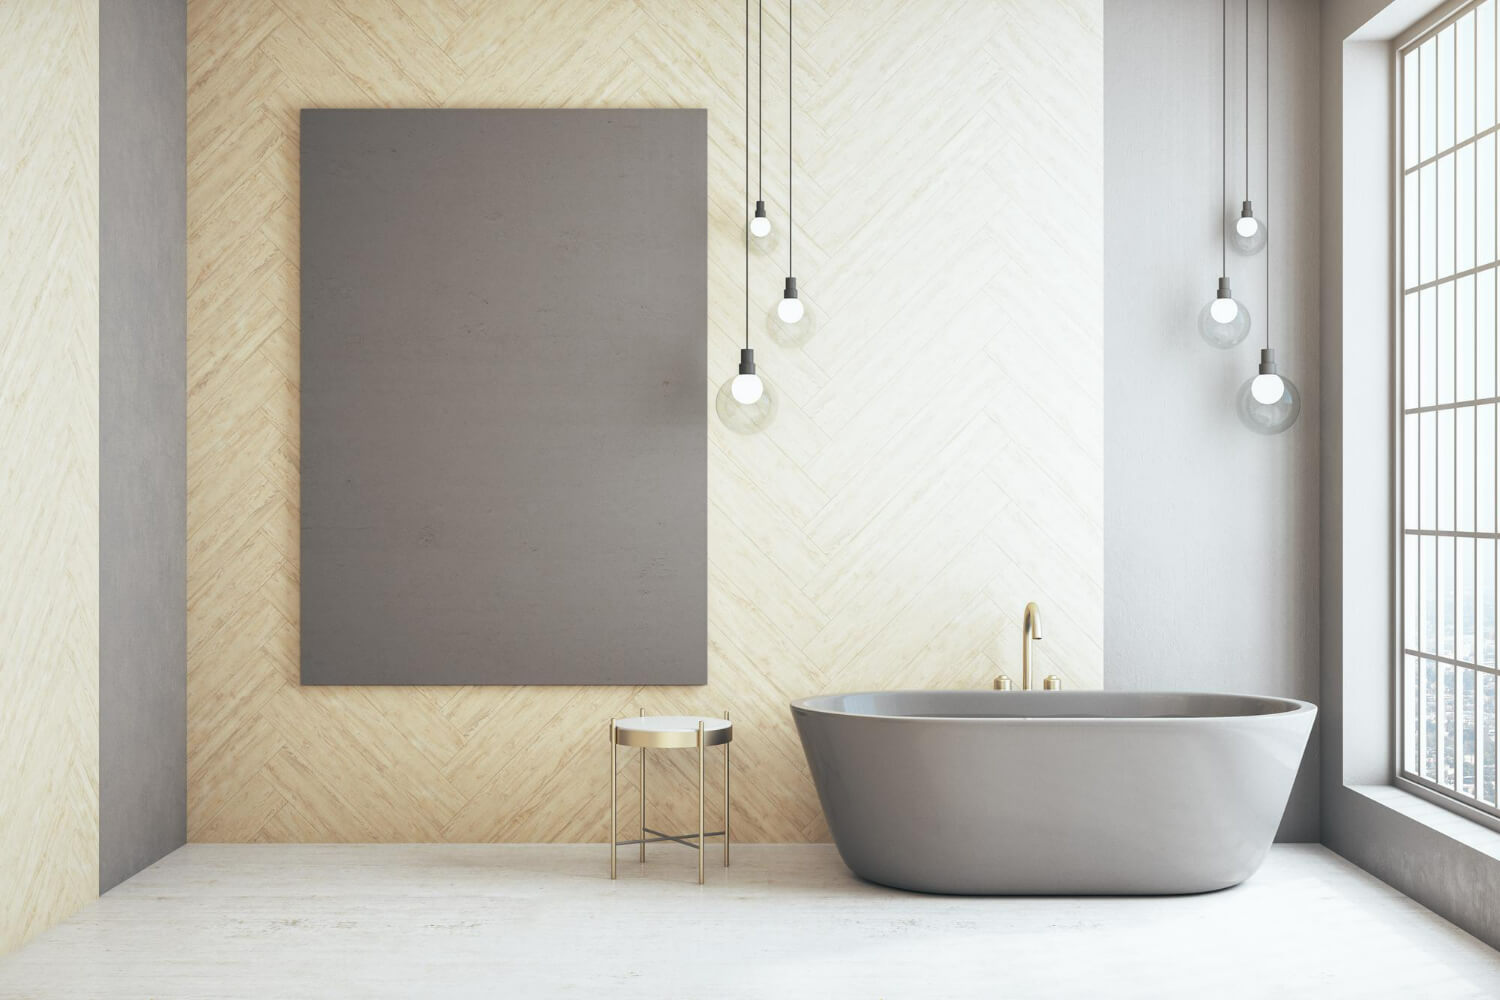 השיטה הייחודית של אביאור אמבטיות לחידוש אמבטיה: פתרון מושלם ויעיל